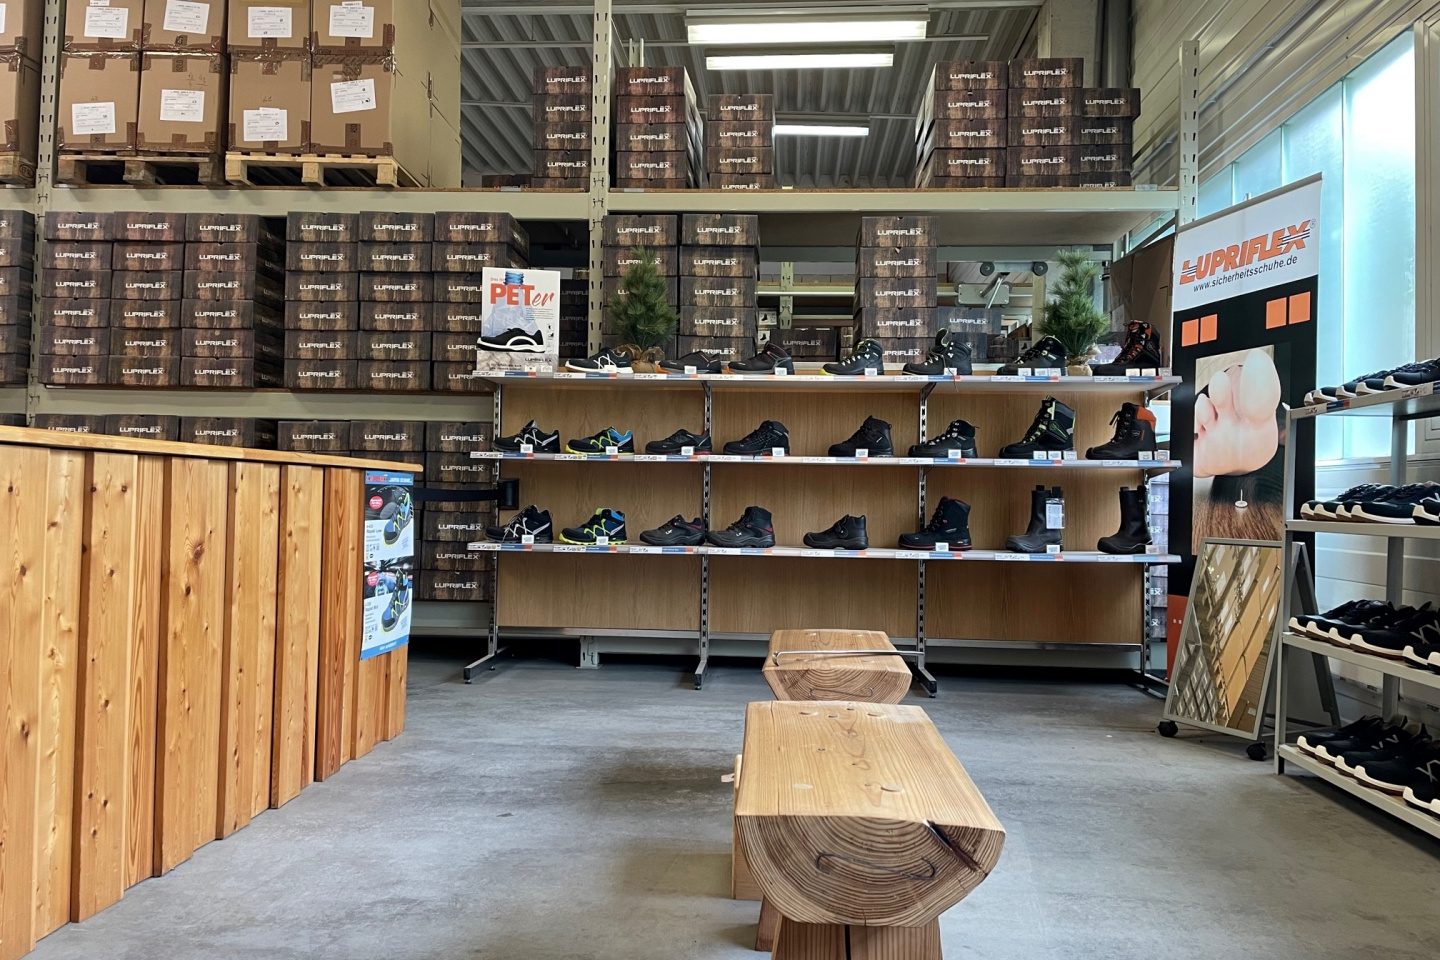 Blick in den Lupriflex Lagerverkauf von Sicherheitsschuhen, im Hintergrund befindet sich das Lager mit Schuhkartons.